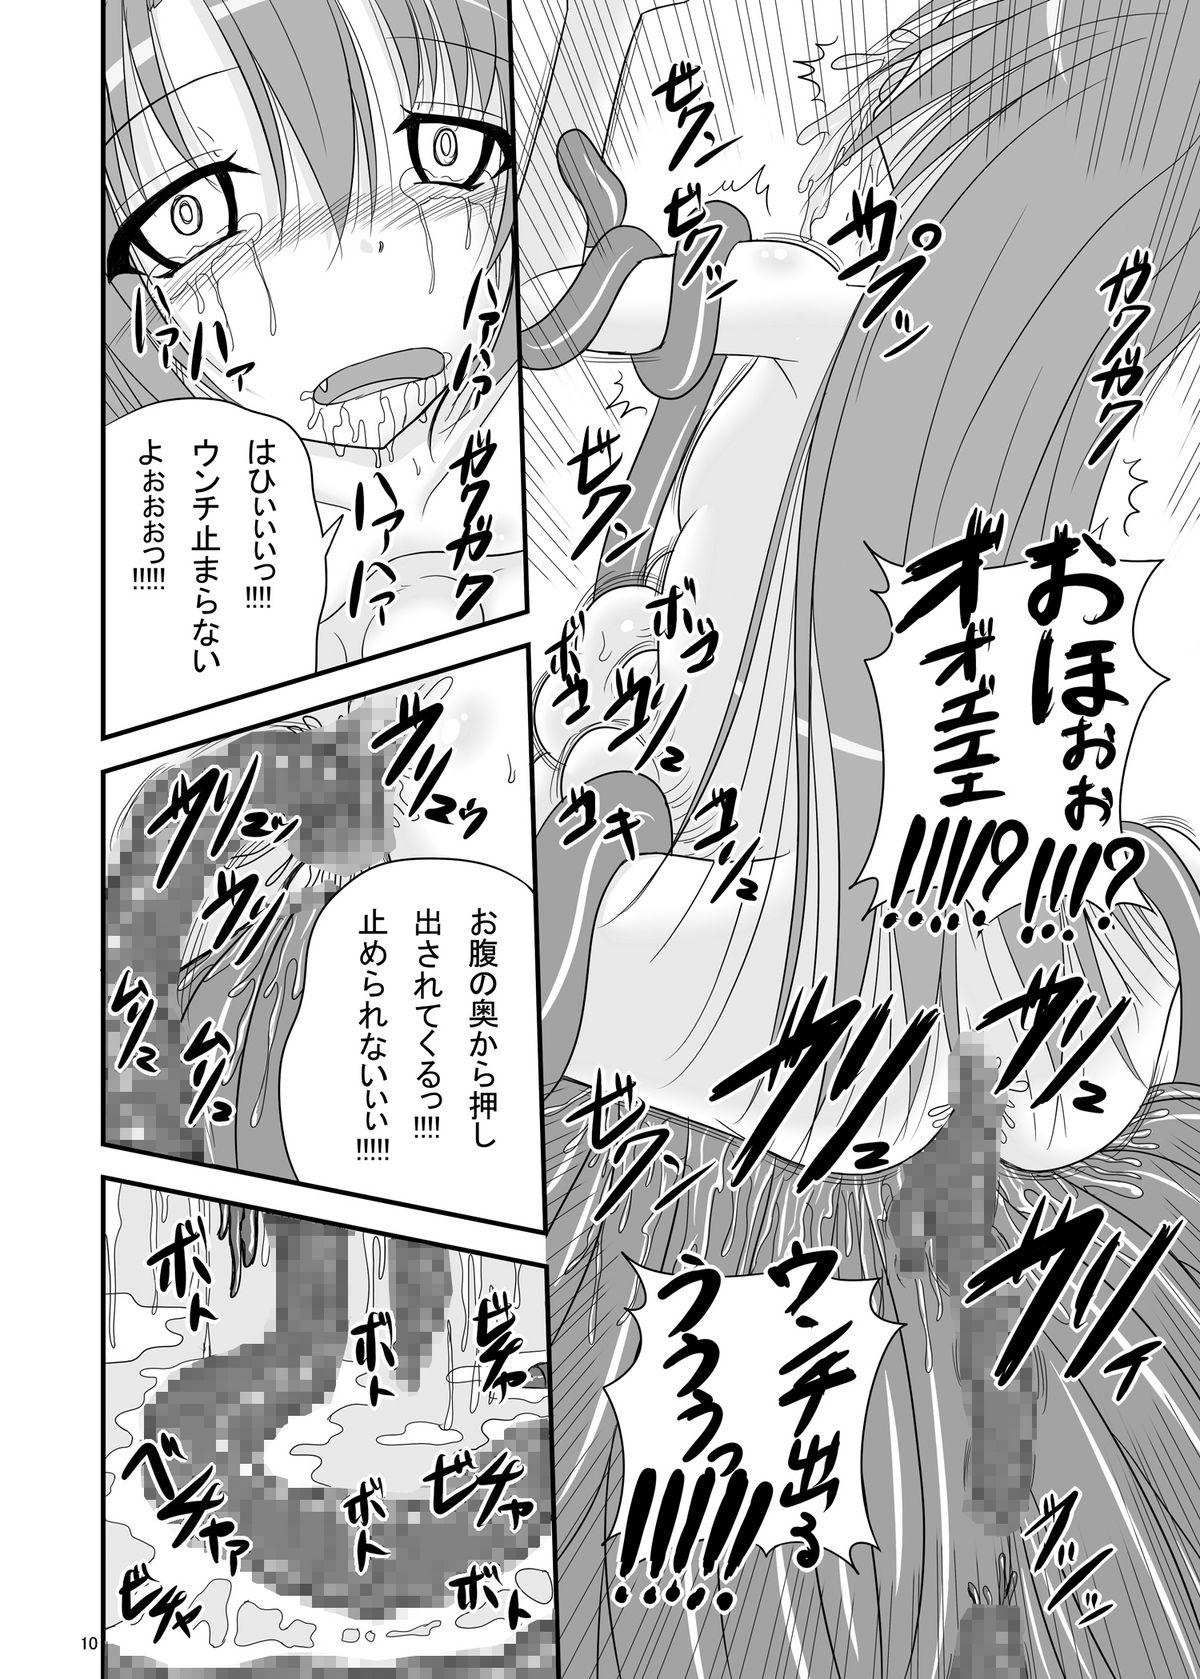 Forwomen Itsuka Zenshin Funsha no Kuso Usagi - Itsuka tenma no kuro usagi Gilf - Page 10